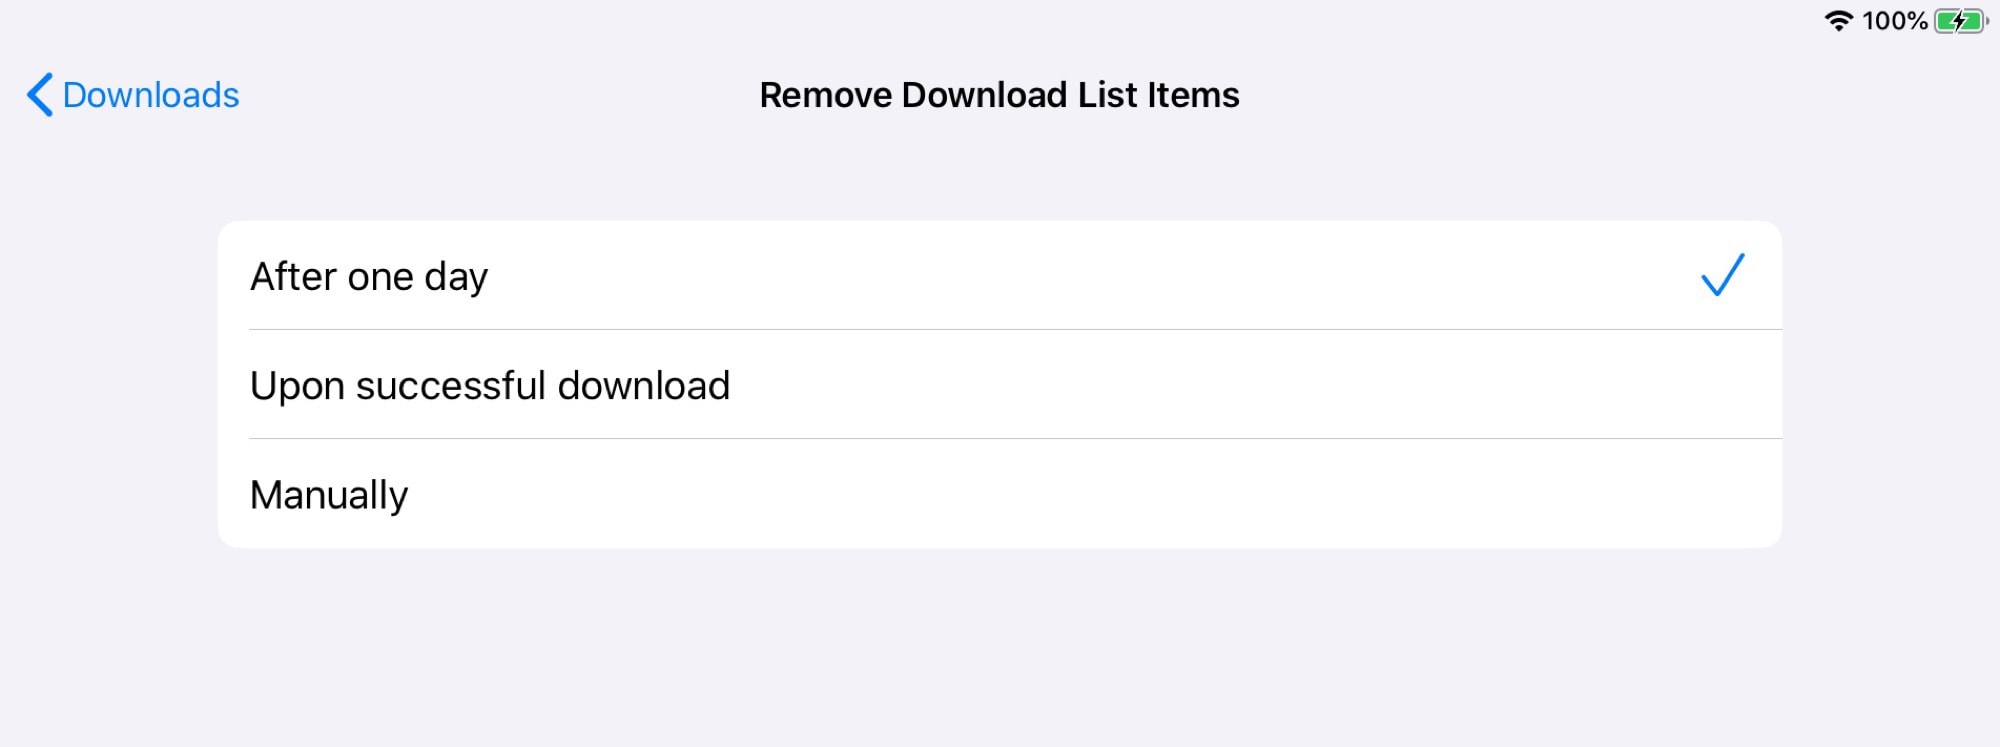 كيفية تنزيل الملفات بدون تطبيقات بعد تحديث iOS 13